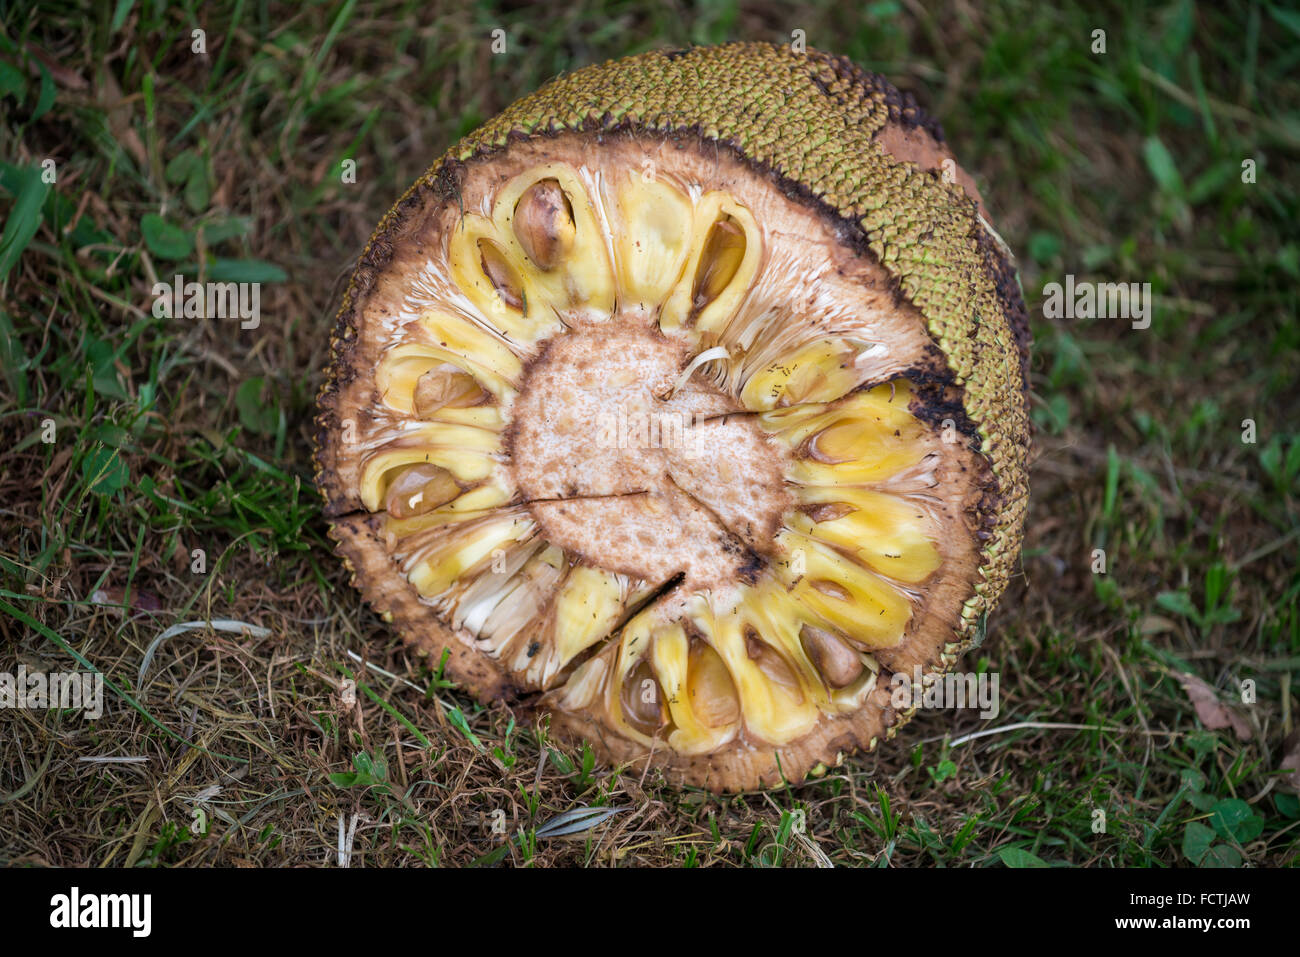 Jackfruit tree, Uganda, Africa Stock Photo